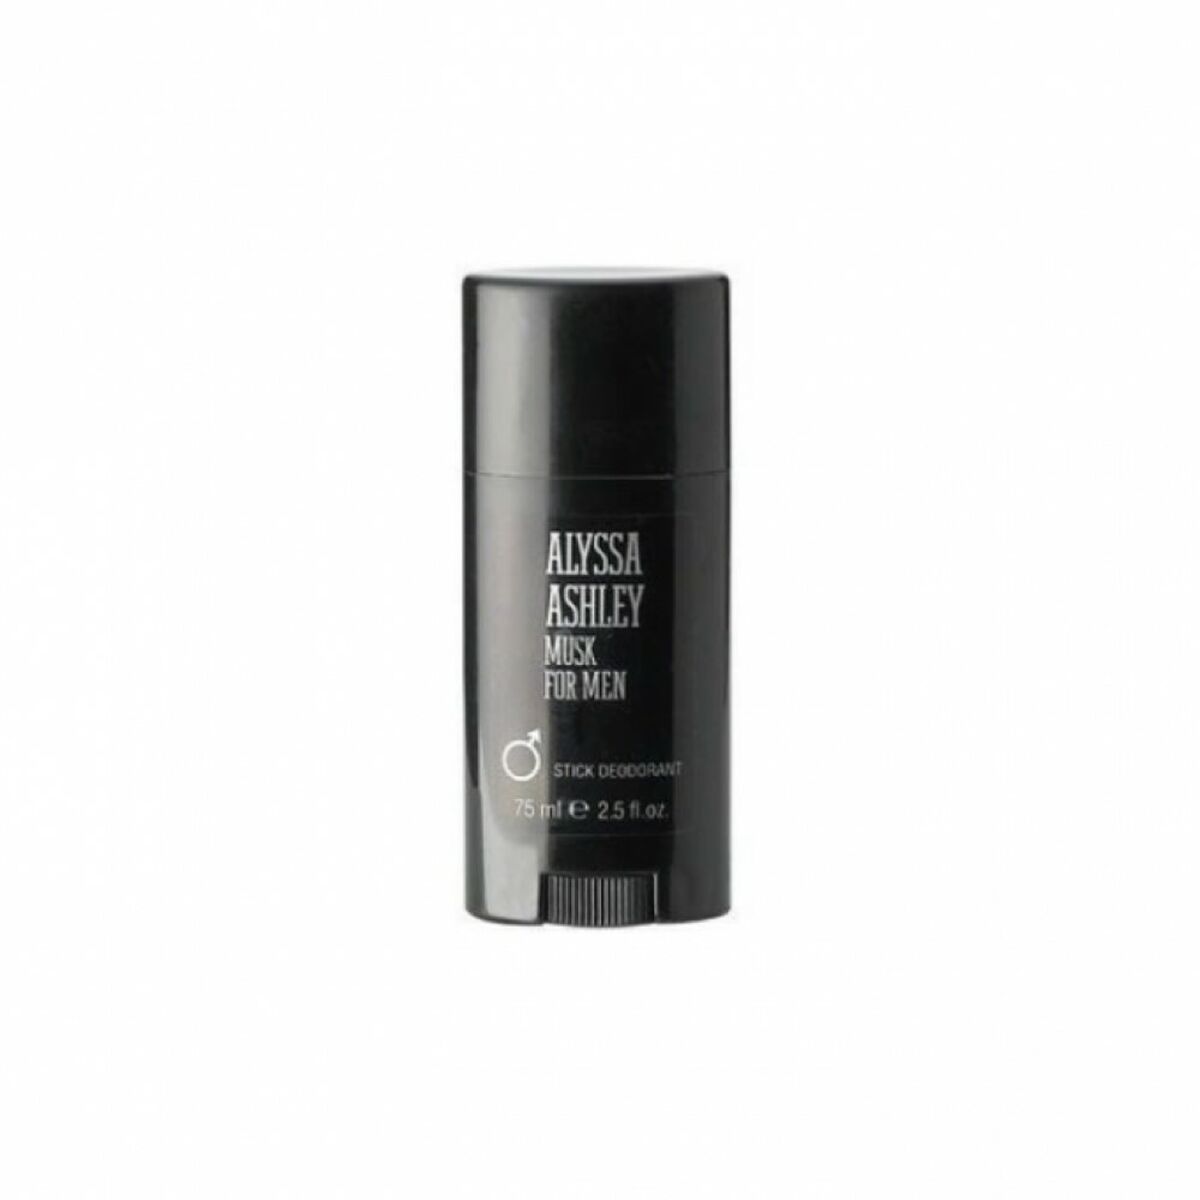 Osta tuote Puikkodeodorantti Musk for Men Alyssa Ashley (75 ml) verkkokaupastamme Korhone: Parfyymit & Kosmetiikka 20% alennuksella koodilla VIIKONLOPPU